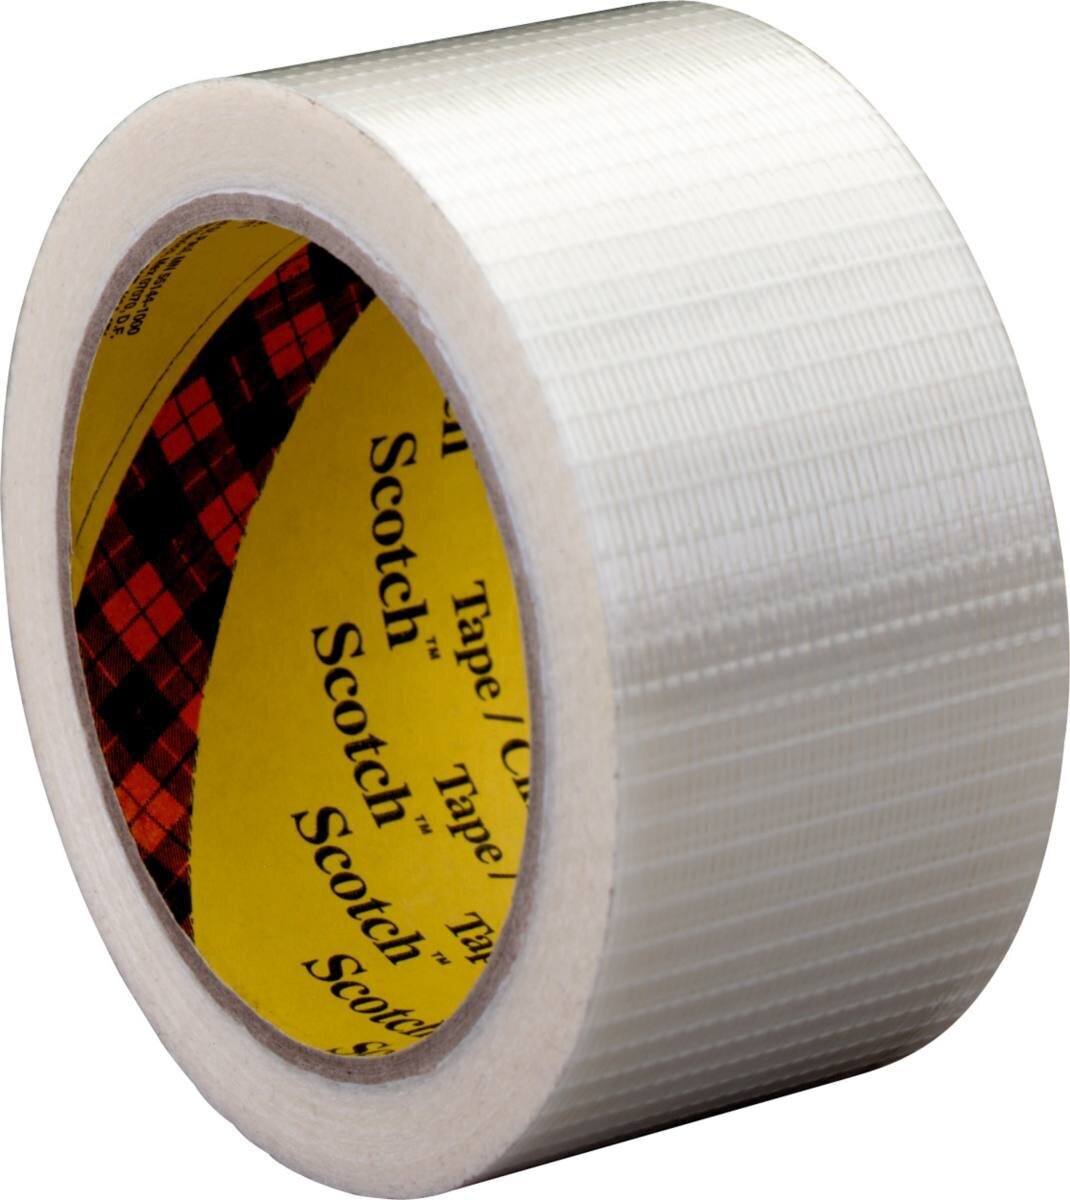 3M Scotch Filament Adhesive Tape 8959, trasparente, 50 mm x 50 m, 0,145 mm